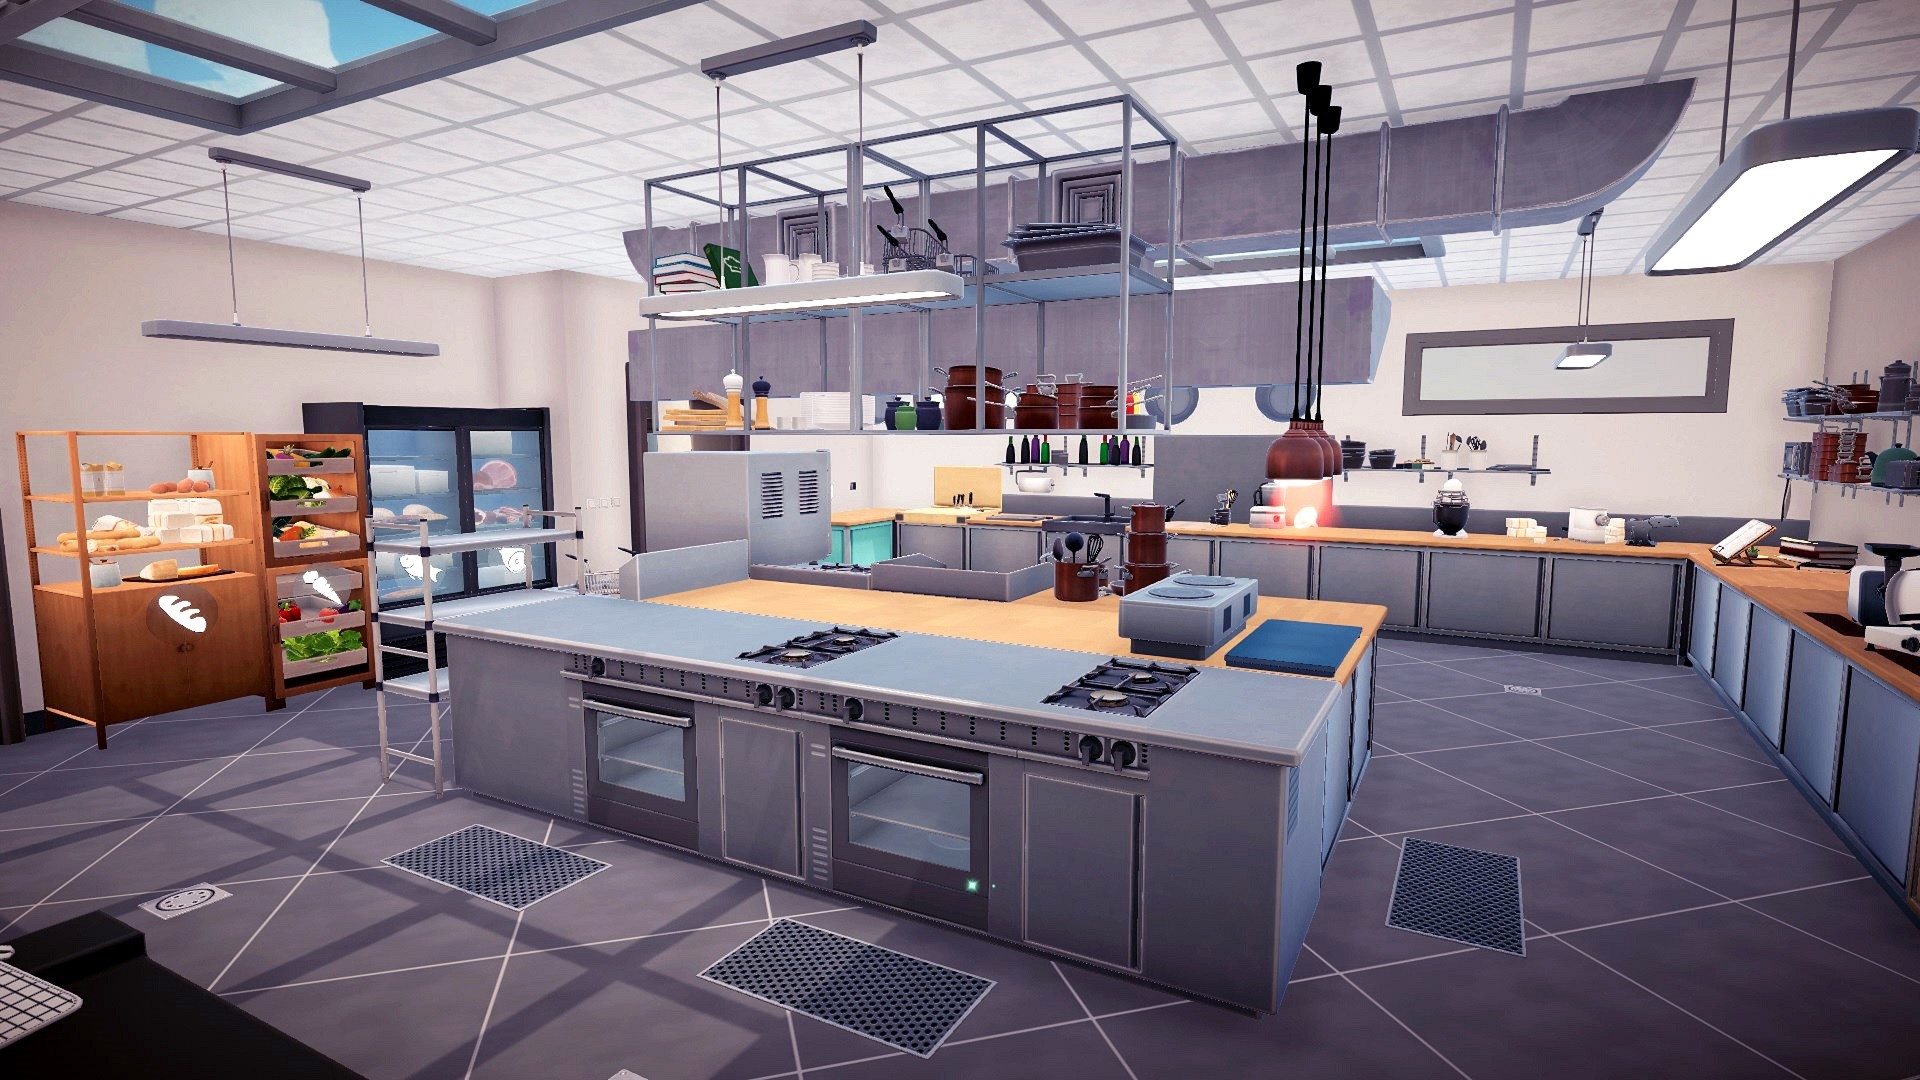 Chef Life: A Restaurant Simulator Al Forno Edition EU Steam CD Key